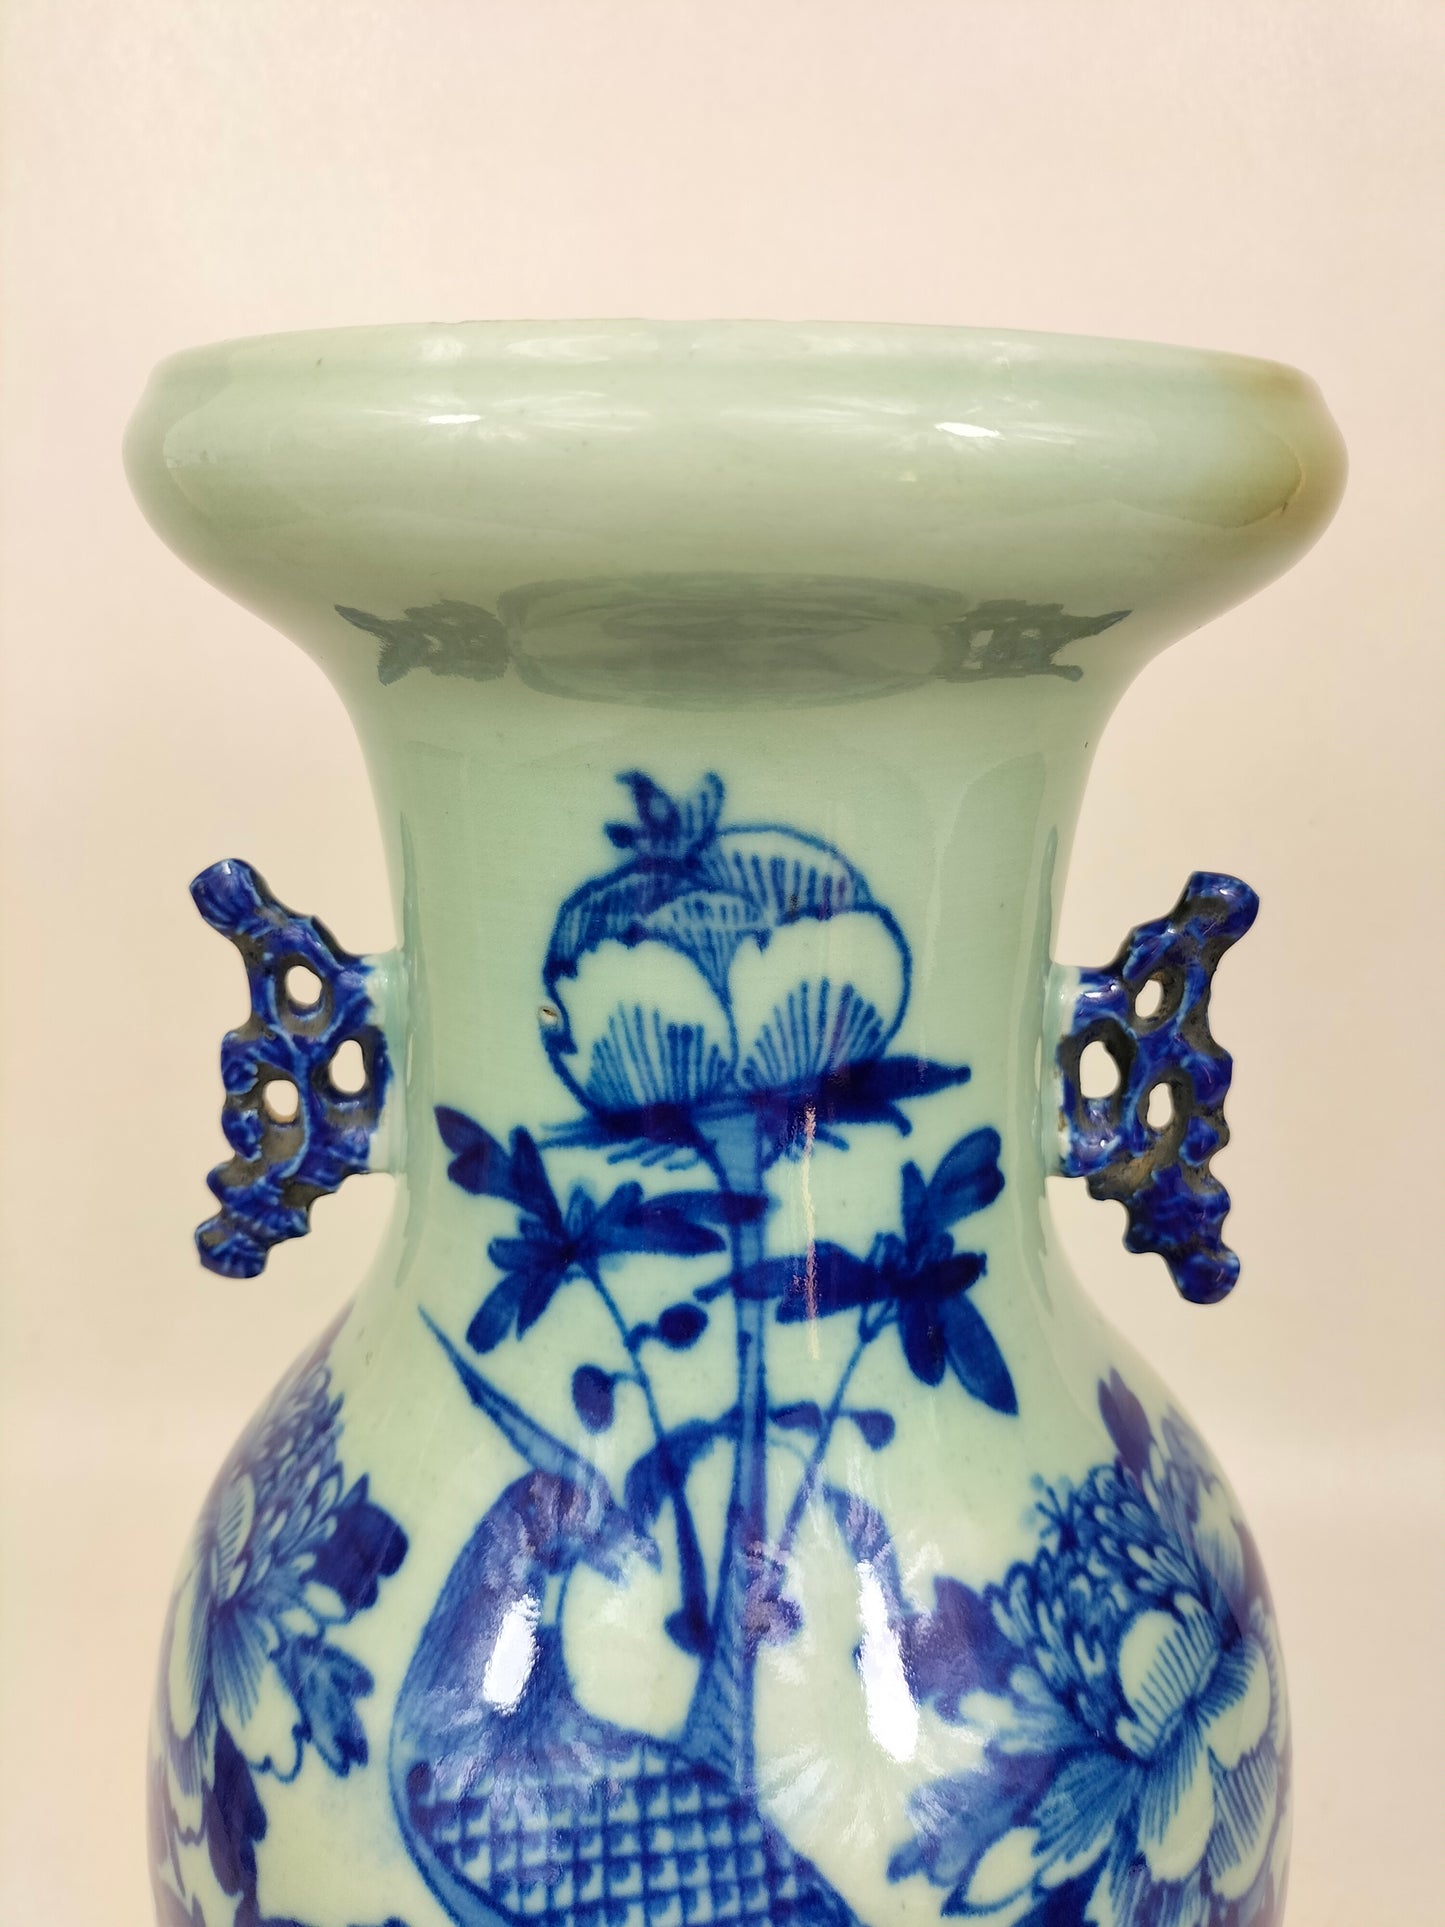 Chiếc bình màu men ngọc cổ của Trung Quốc được trang trí hình chim và hoa // Nhà Thanh - thế kỷ 19